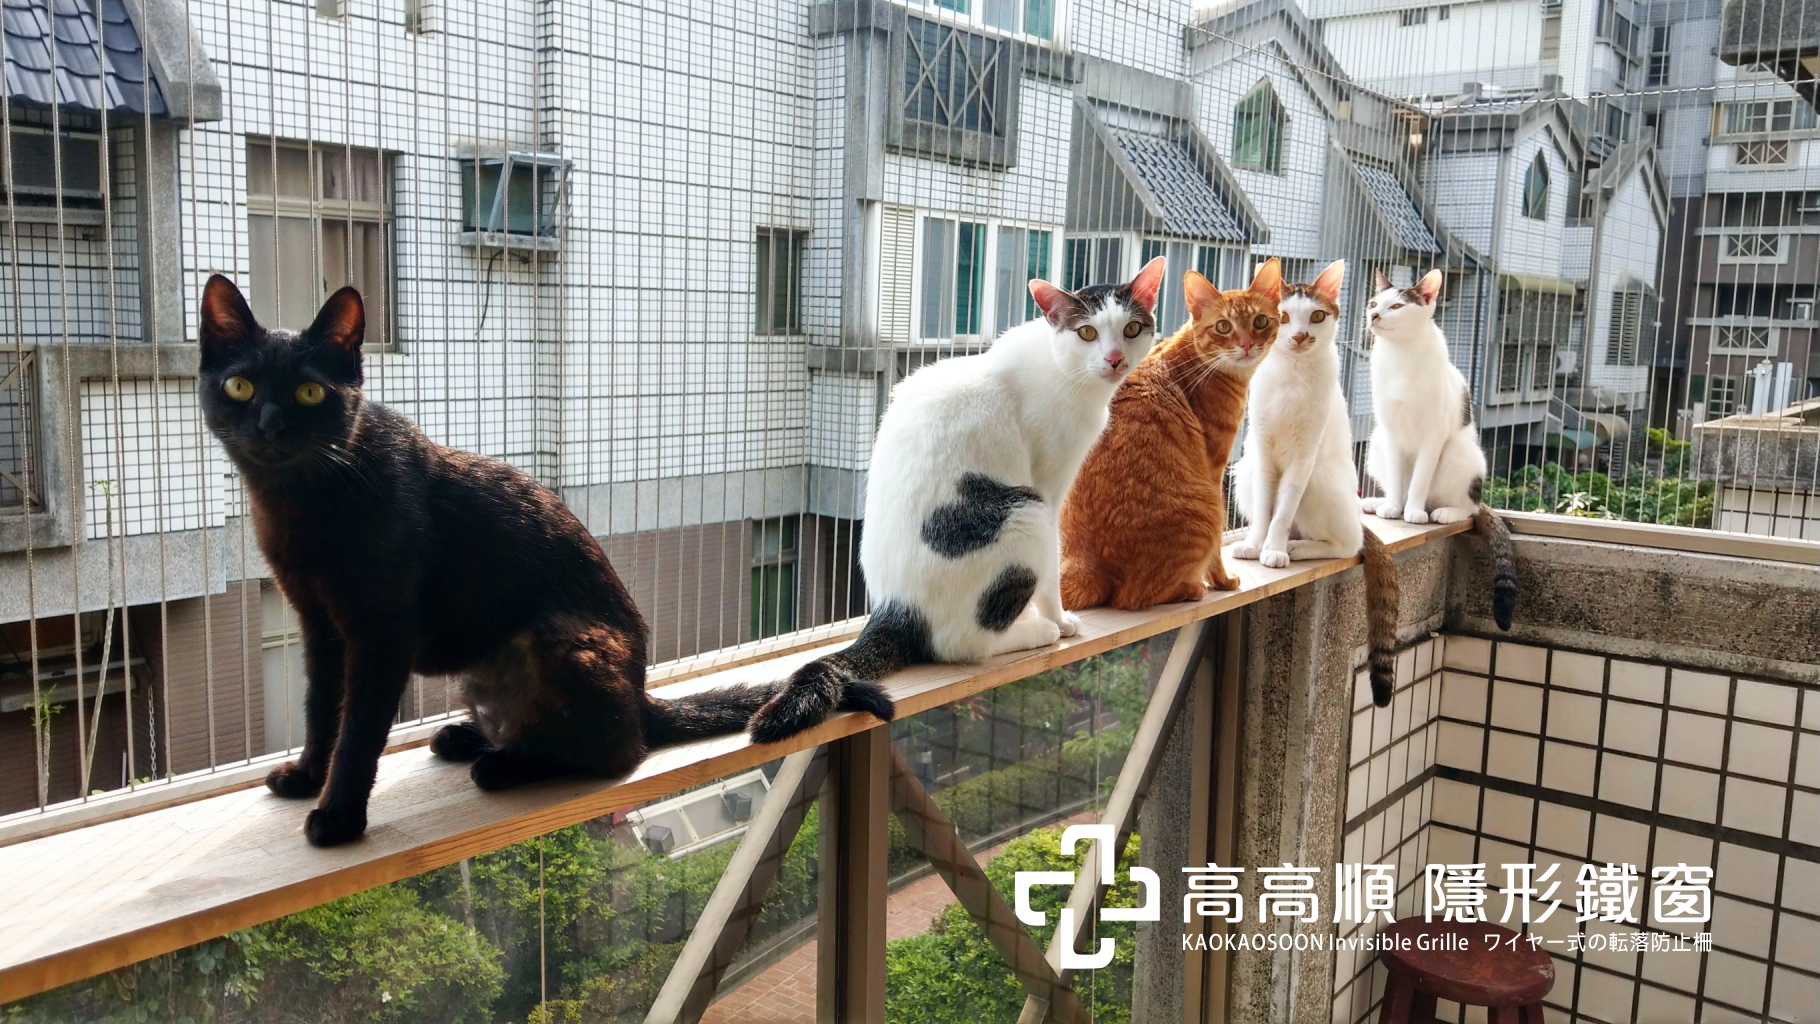 在陽台搭建木板貓咪就可以在高處活動了，加上防貓隱形鐵窗的防護貓奴就可以安心讓貓咪在陽台玩耍囉